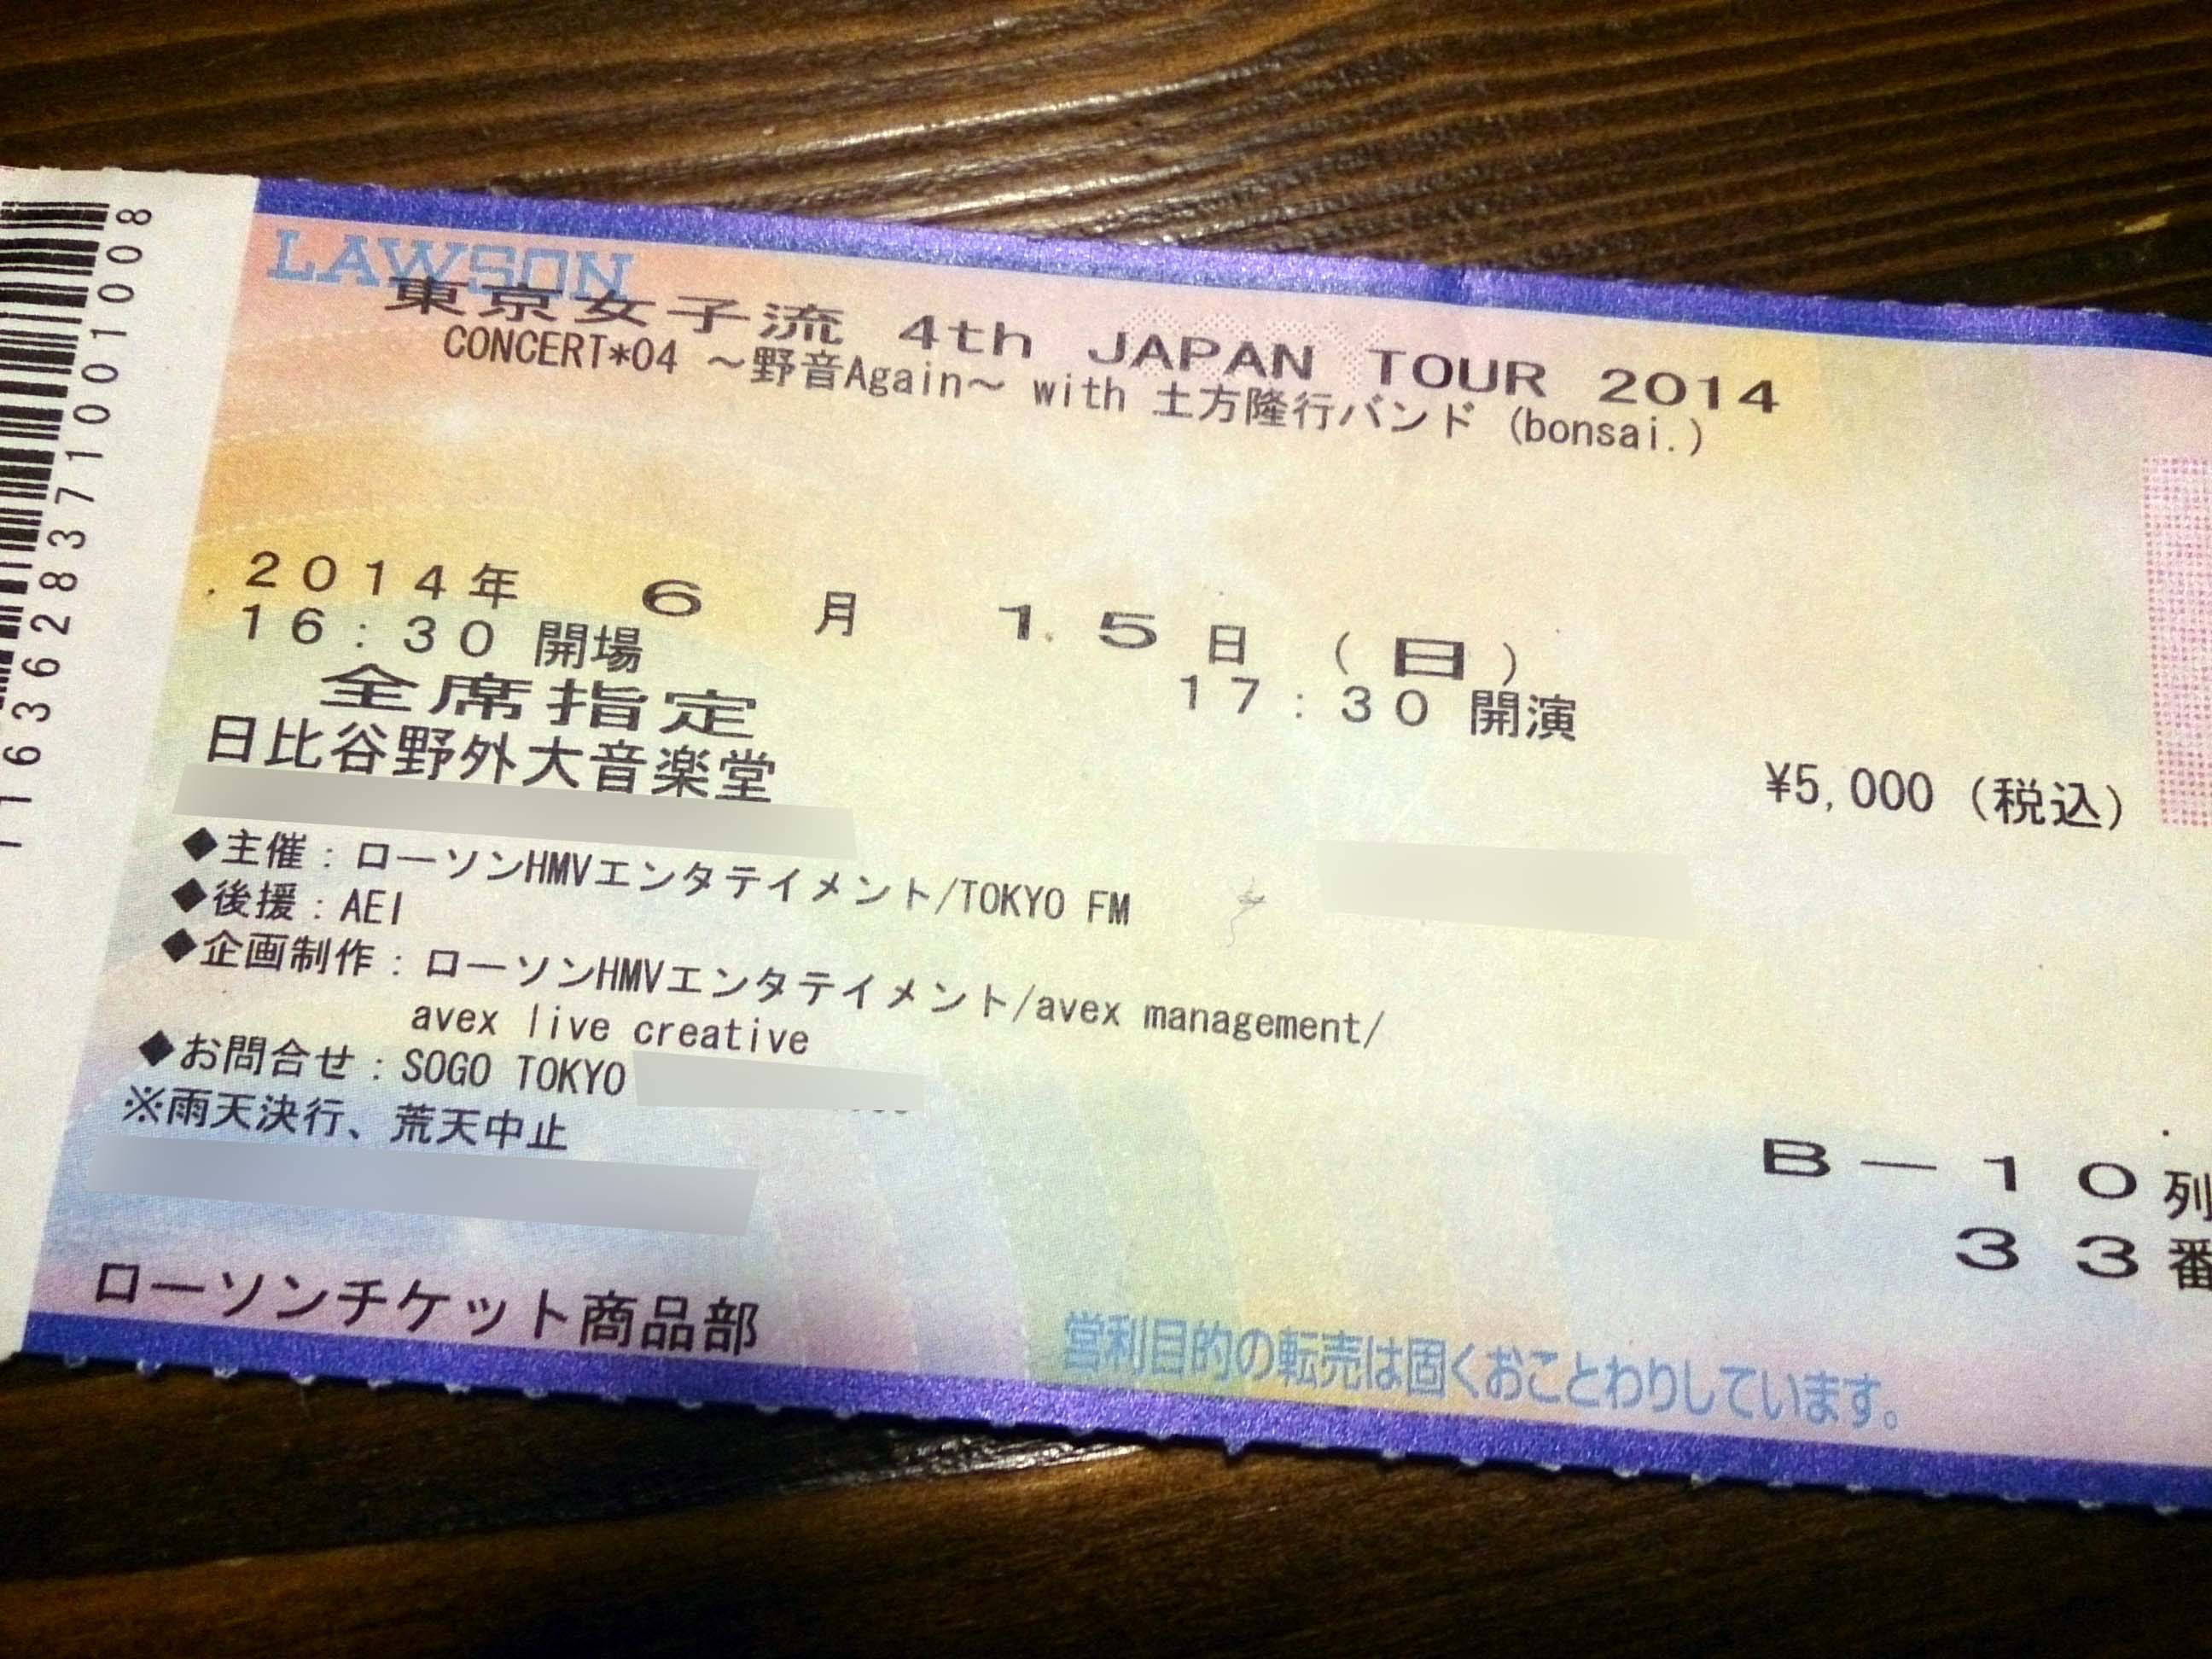 東京女子流 4th JAPAN TOUR 2014 CONCERT*04 ～野音Again～』に行ってきたよ – てっきんの具。